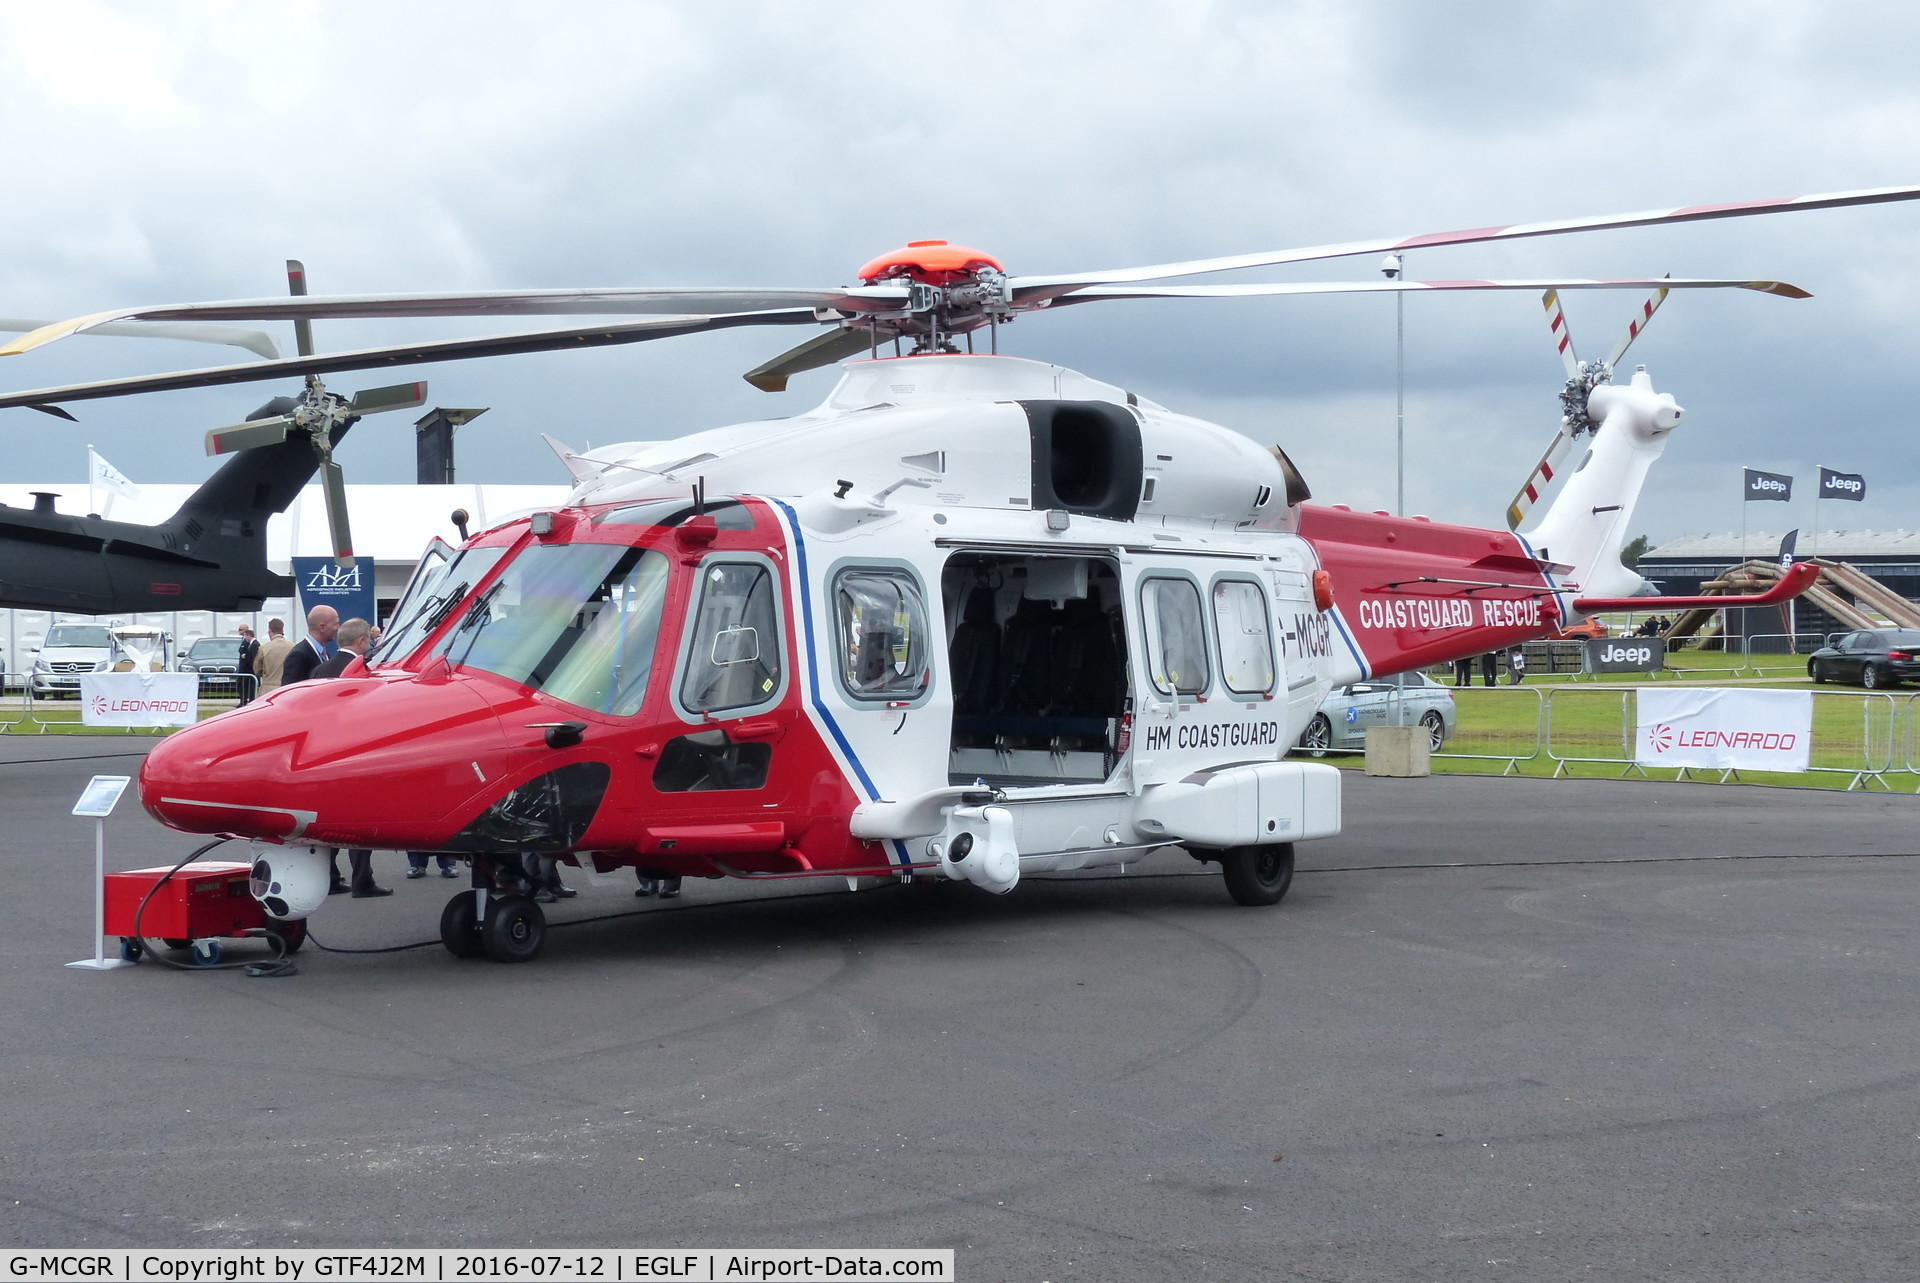 G-MCGR, 2014 AgustaWestland AW189 C/N 92004, G-MCGR at Farnborough 12.7.16